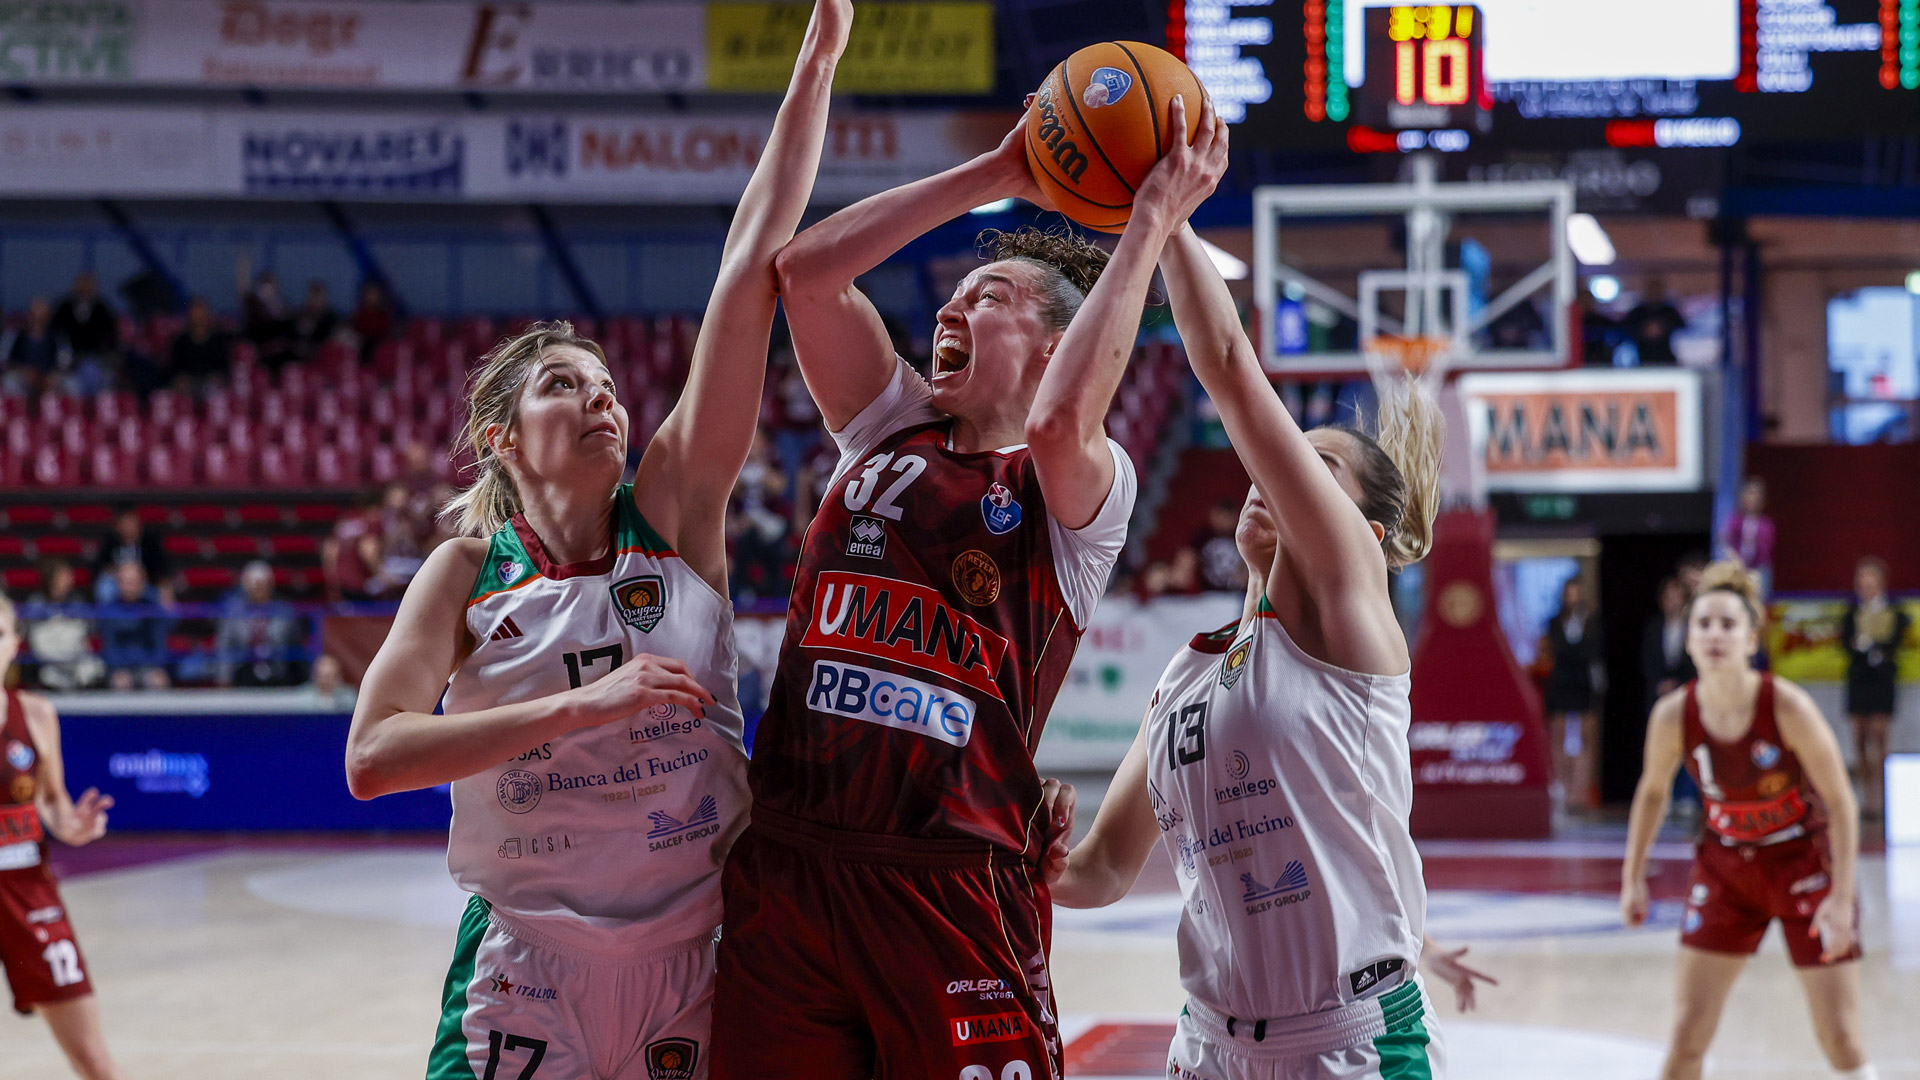 Gara 1 quarti: Umana Reyer - Oxygen Roma Basket 85-63